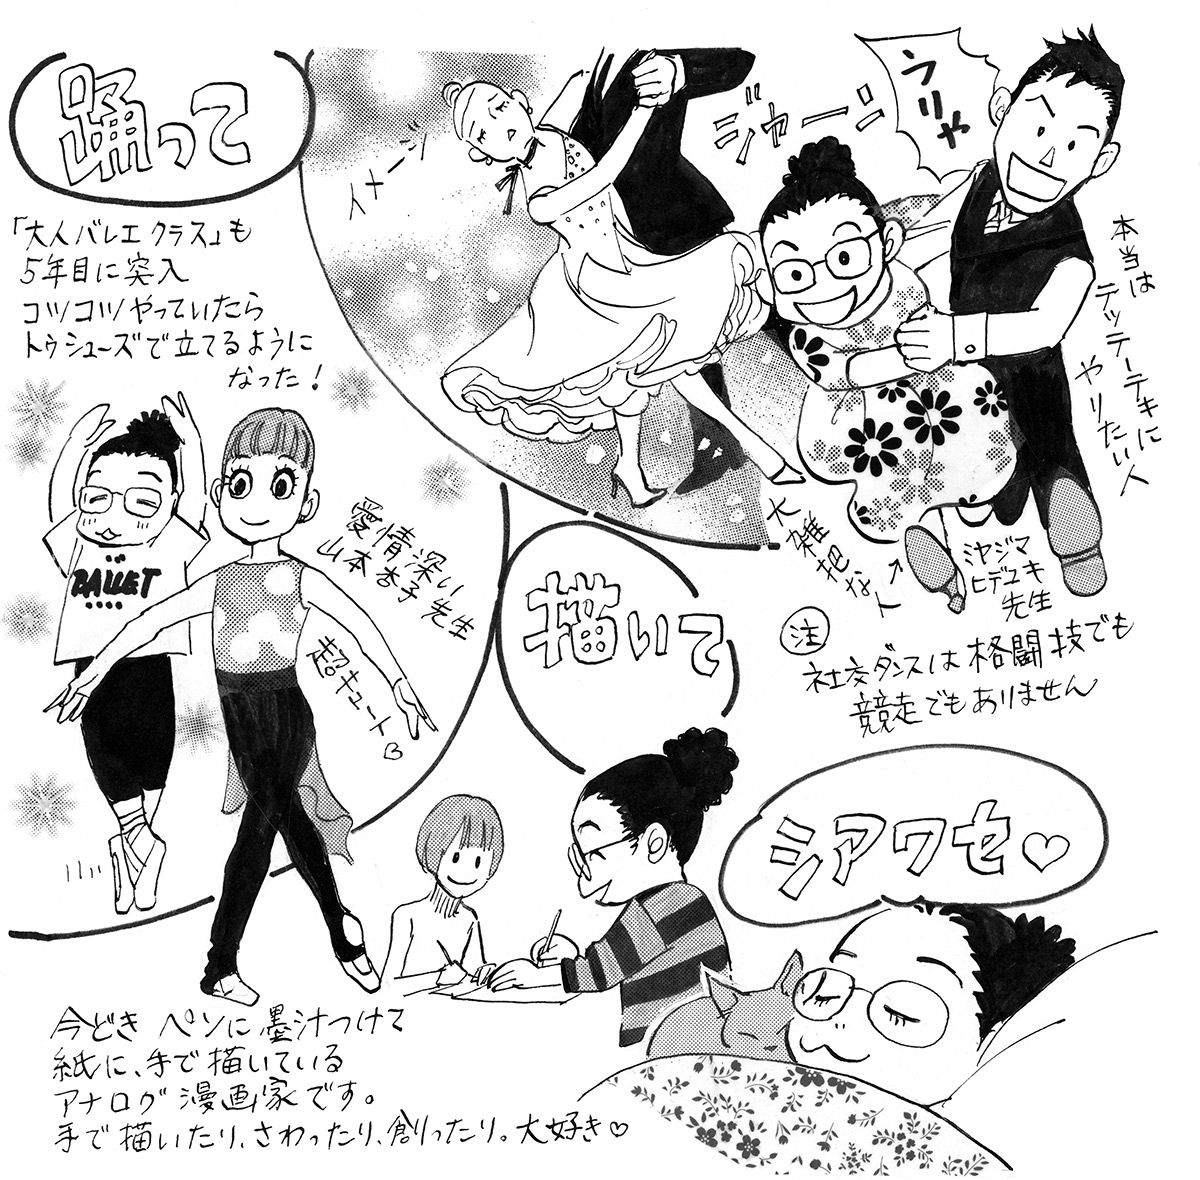 4ページ目 槇村さとる 人気漫画家を襲った更年期 胆石 うつ 今は社交ダンスで健康に 健康 婦人公論 Jp